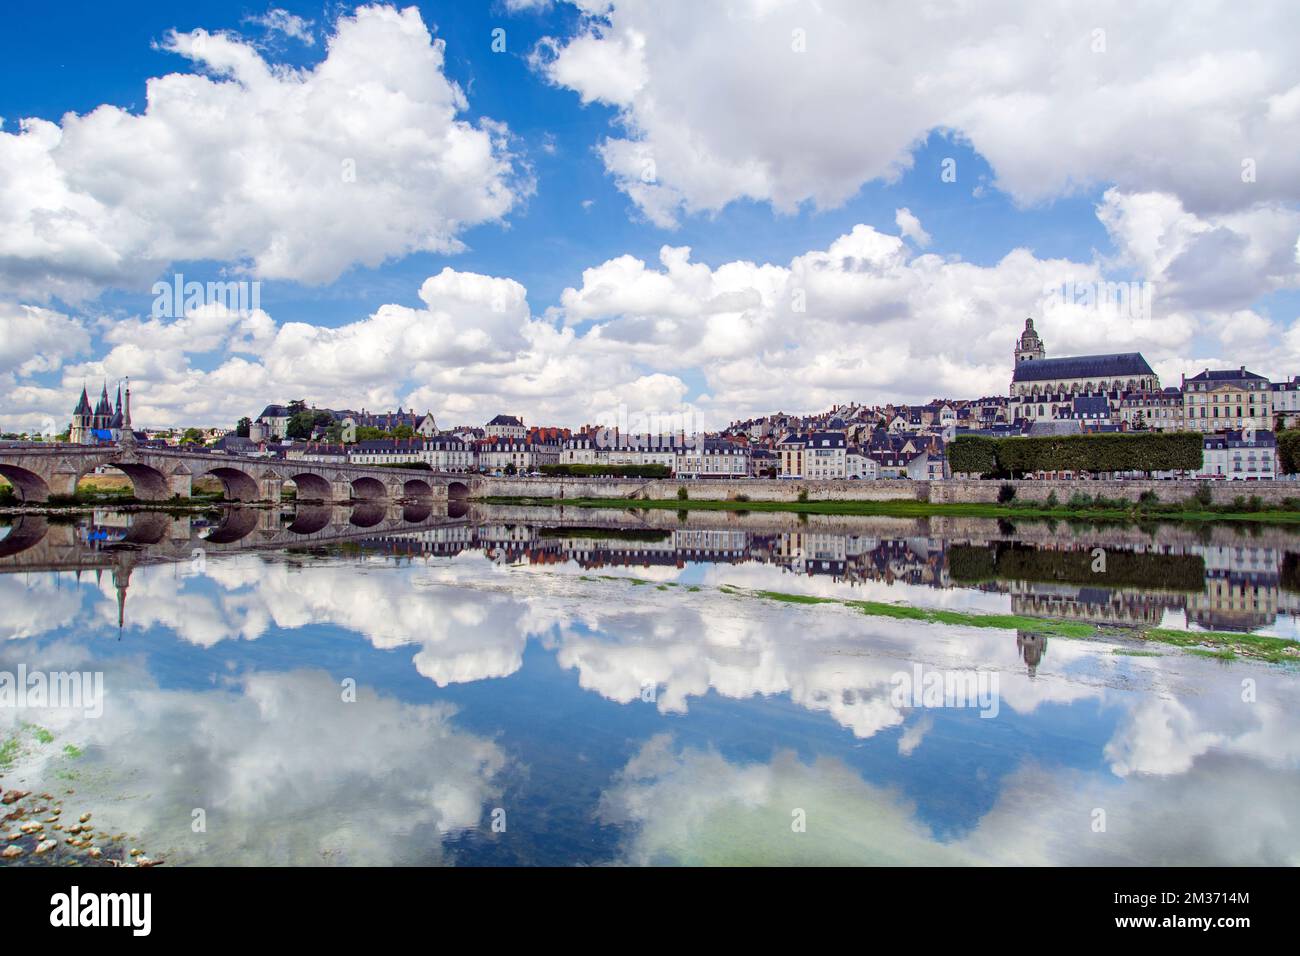 Blois, Valle della Loira, Francia: Skyline di Blois, città sulle rive del fiume Loira con il ponte Jacques Gabriel, capitale del dipartimento del Loir-et-Cher nel centro Foto Stock